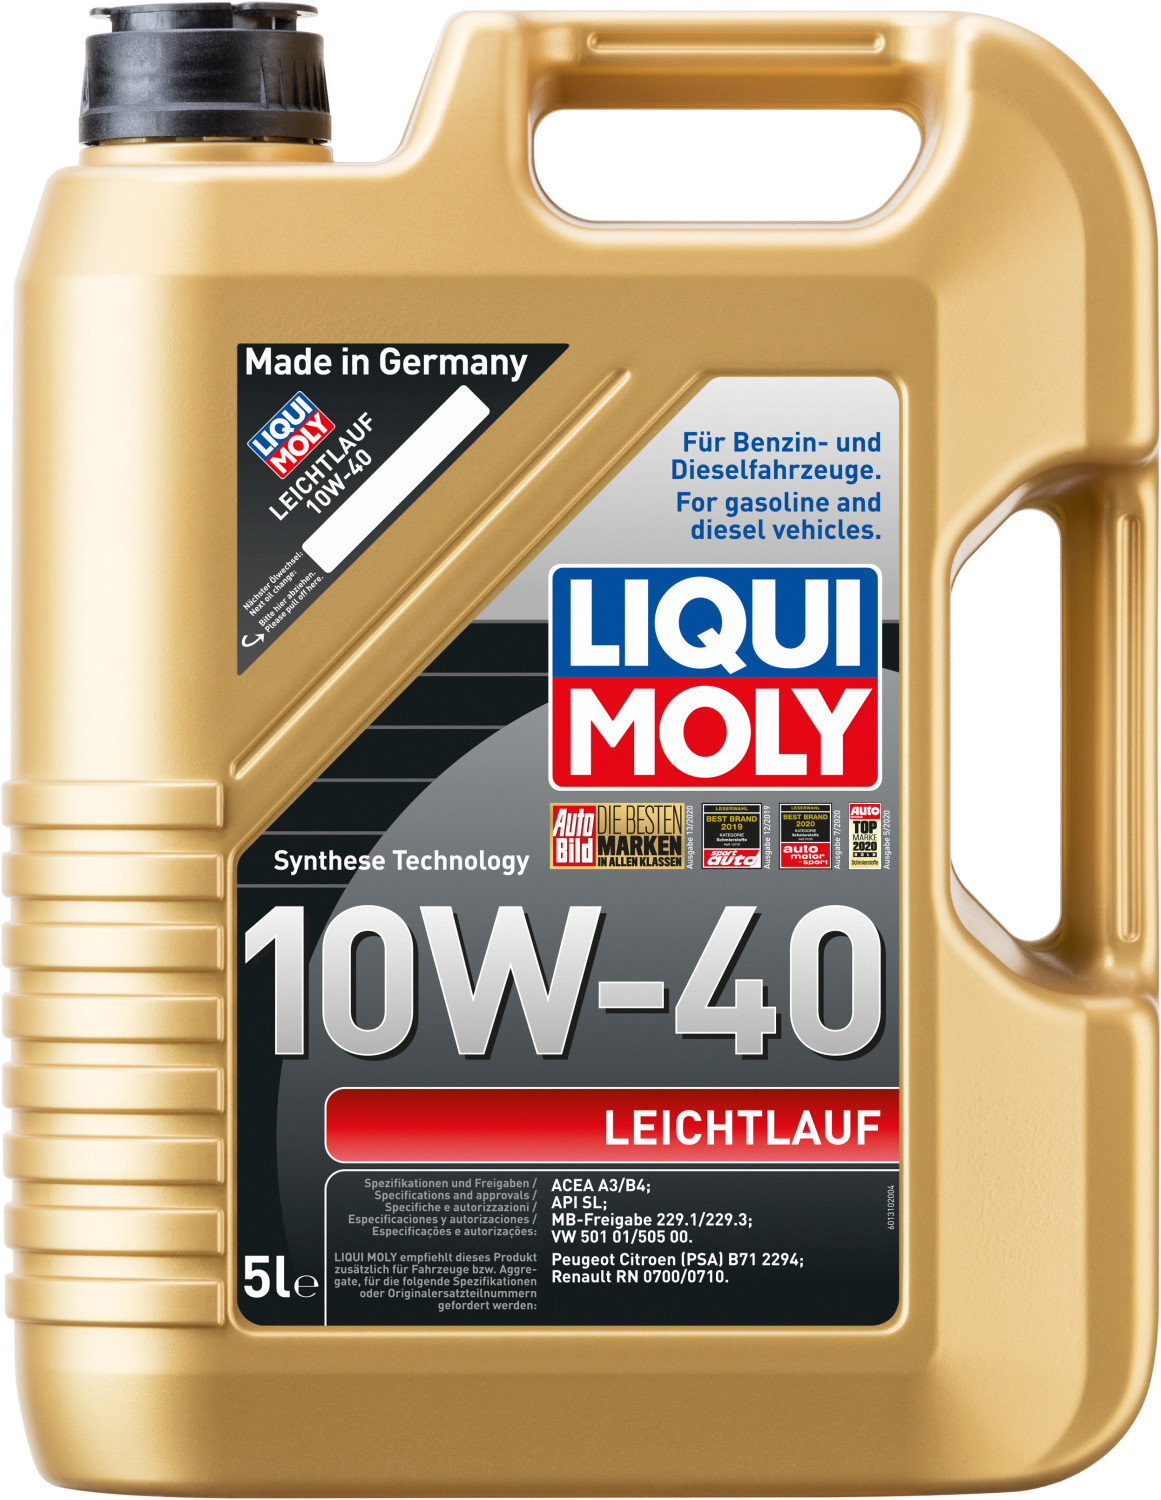 Liqui Moly 1310 Leichtlauf 10W-40 Motoröl 5l